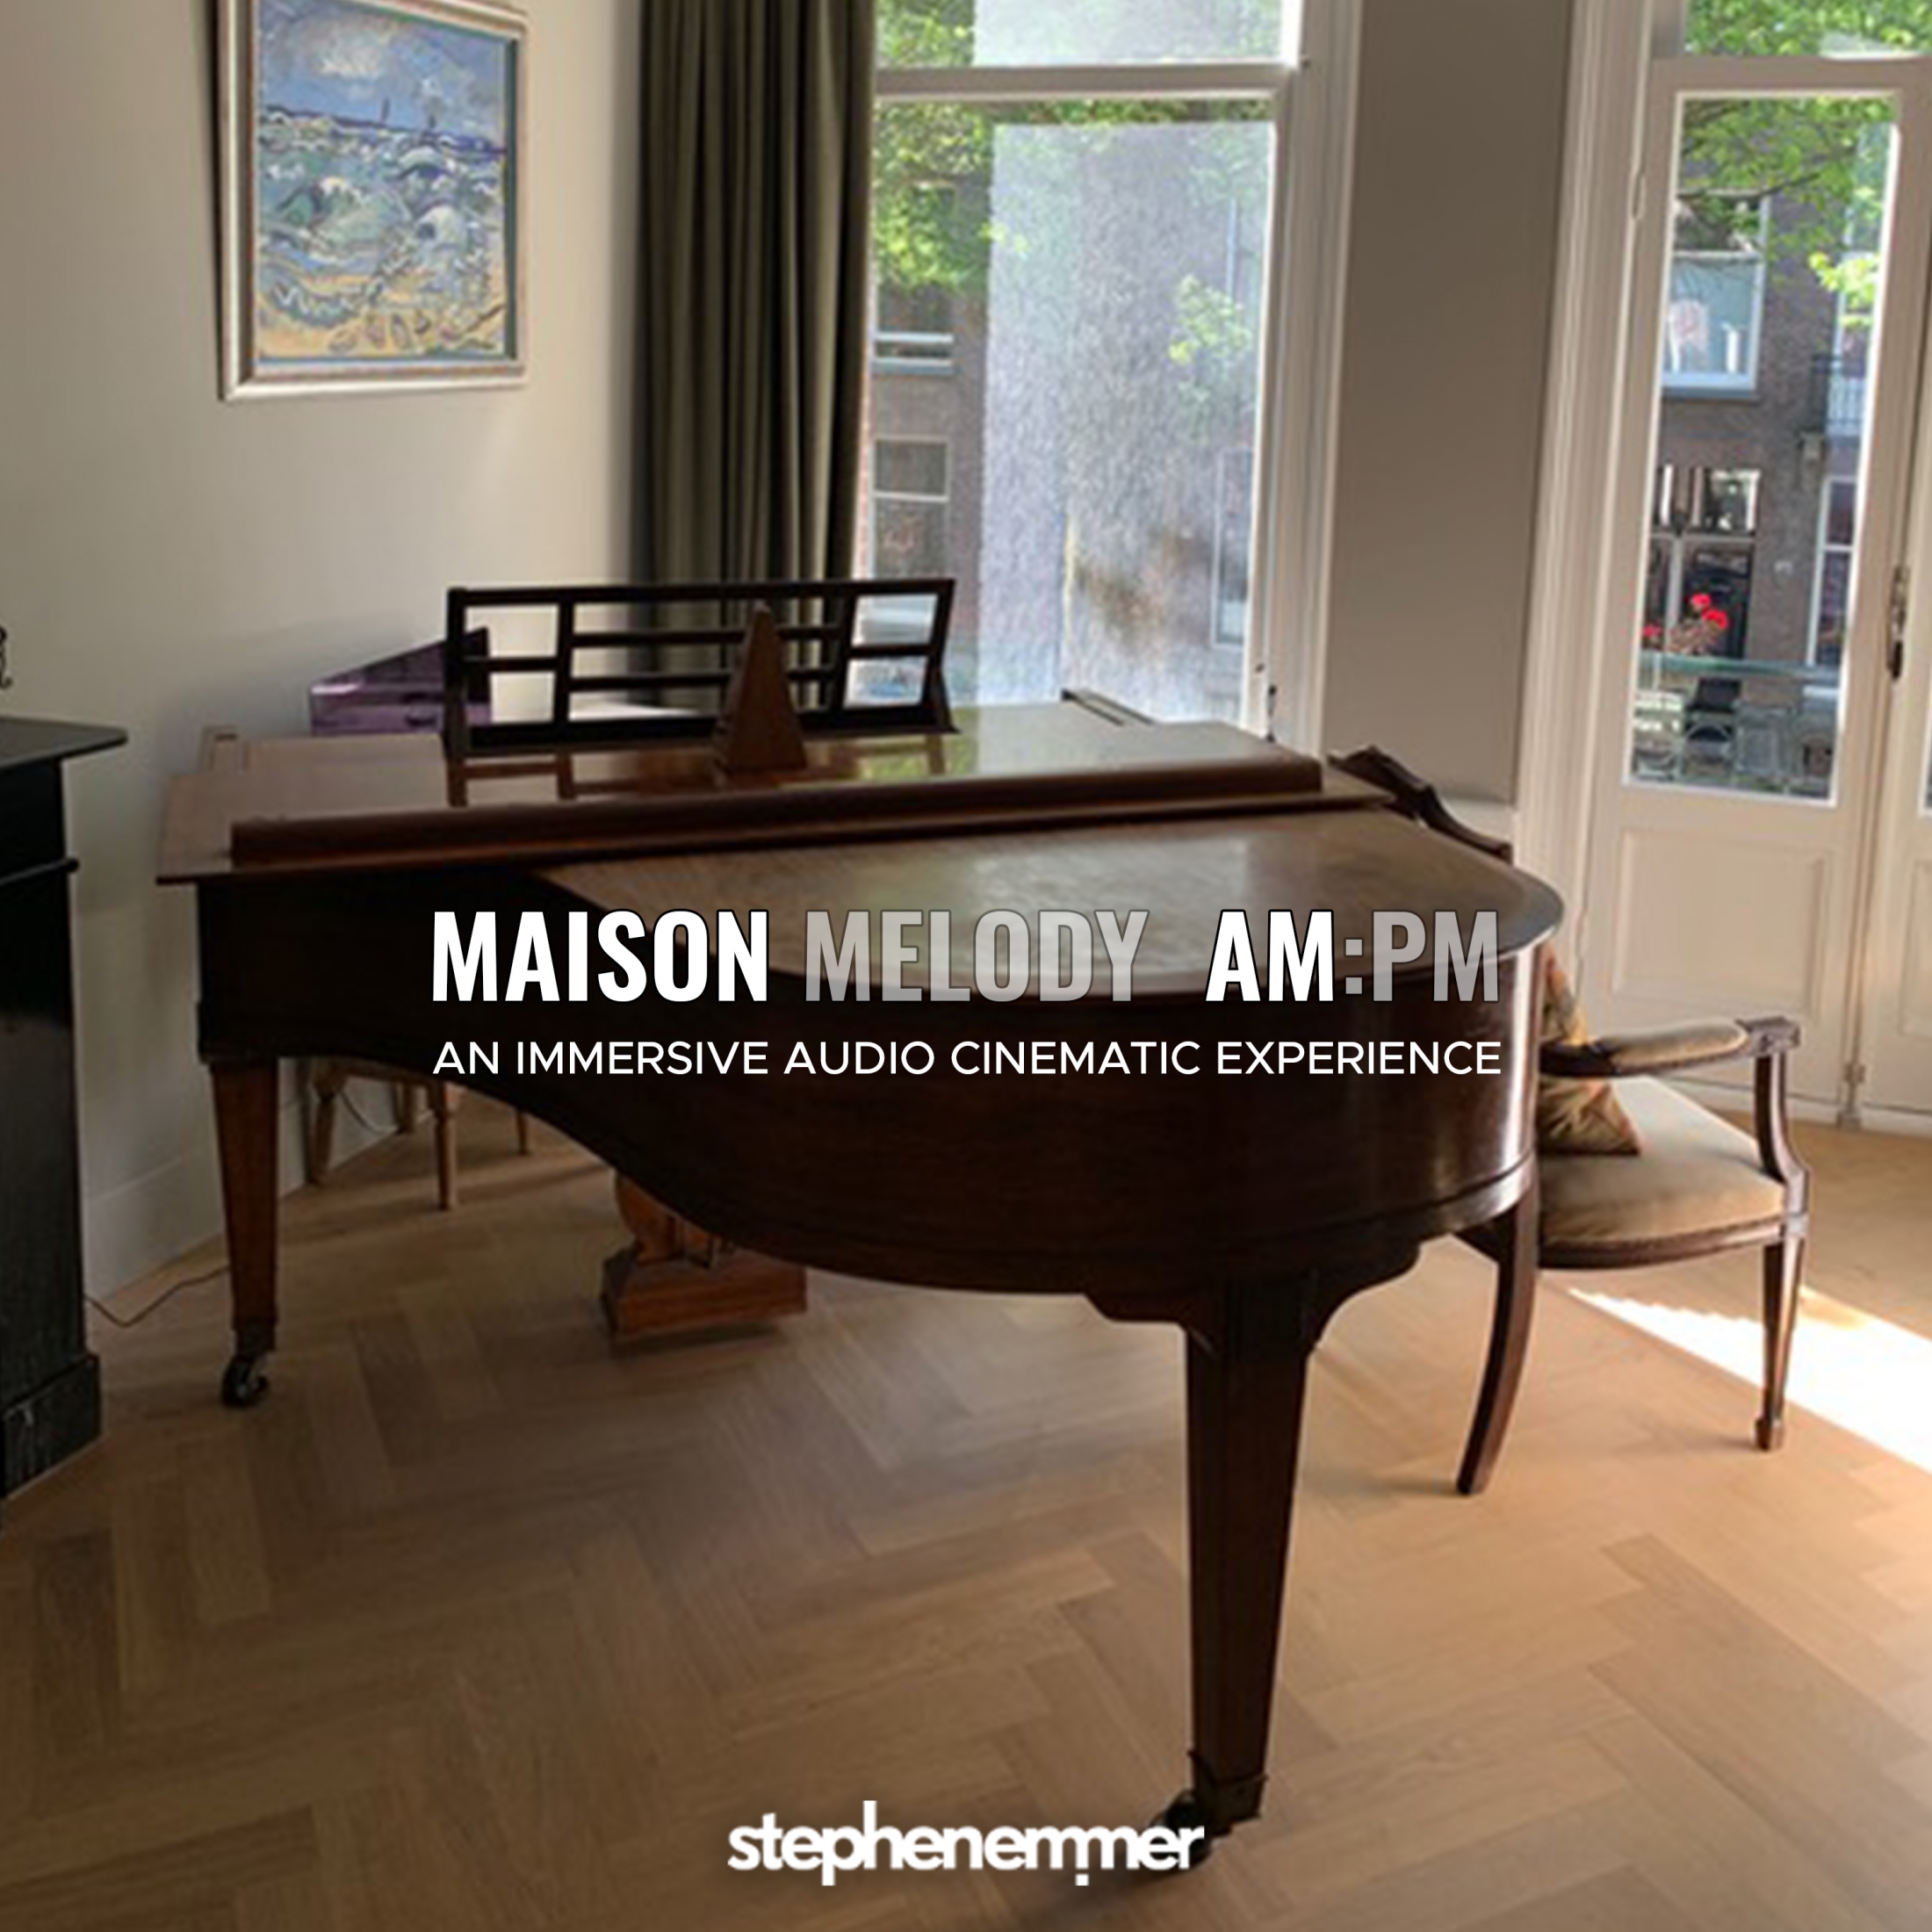 Maison Melody AM:PM